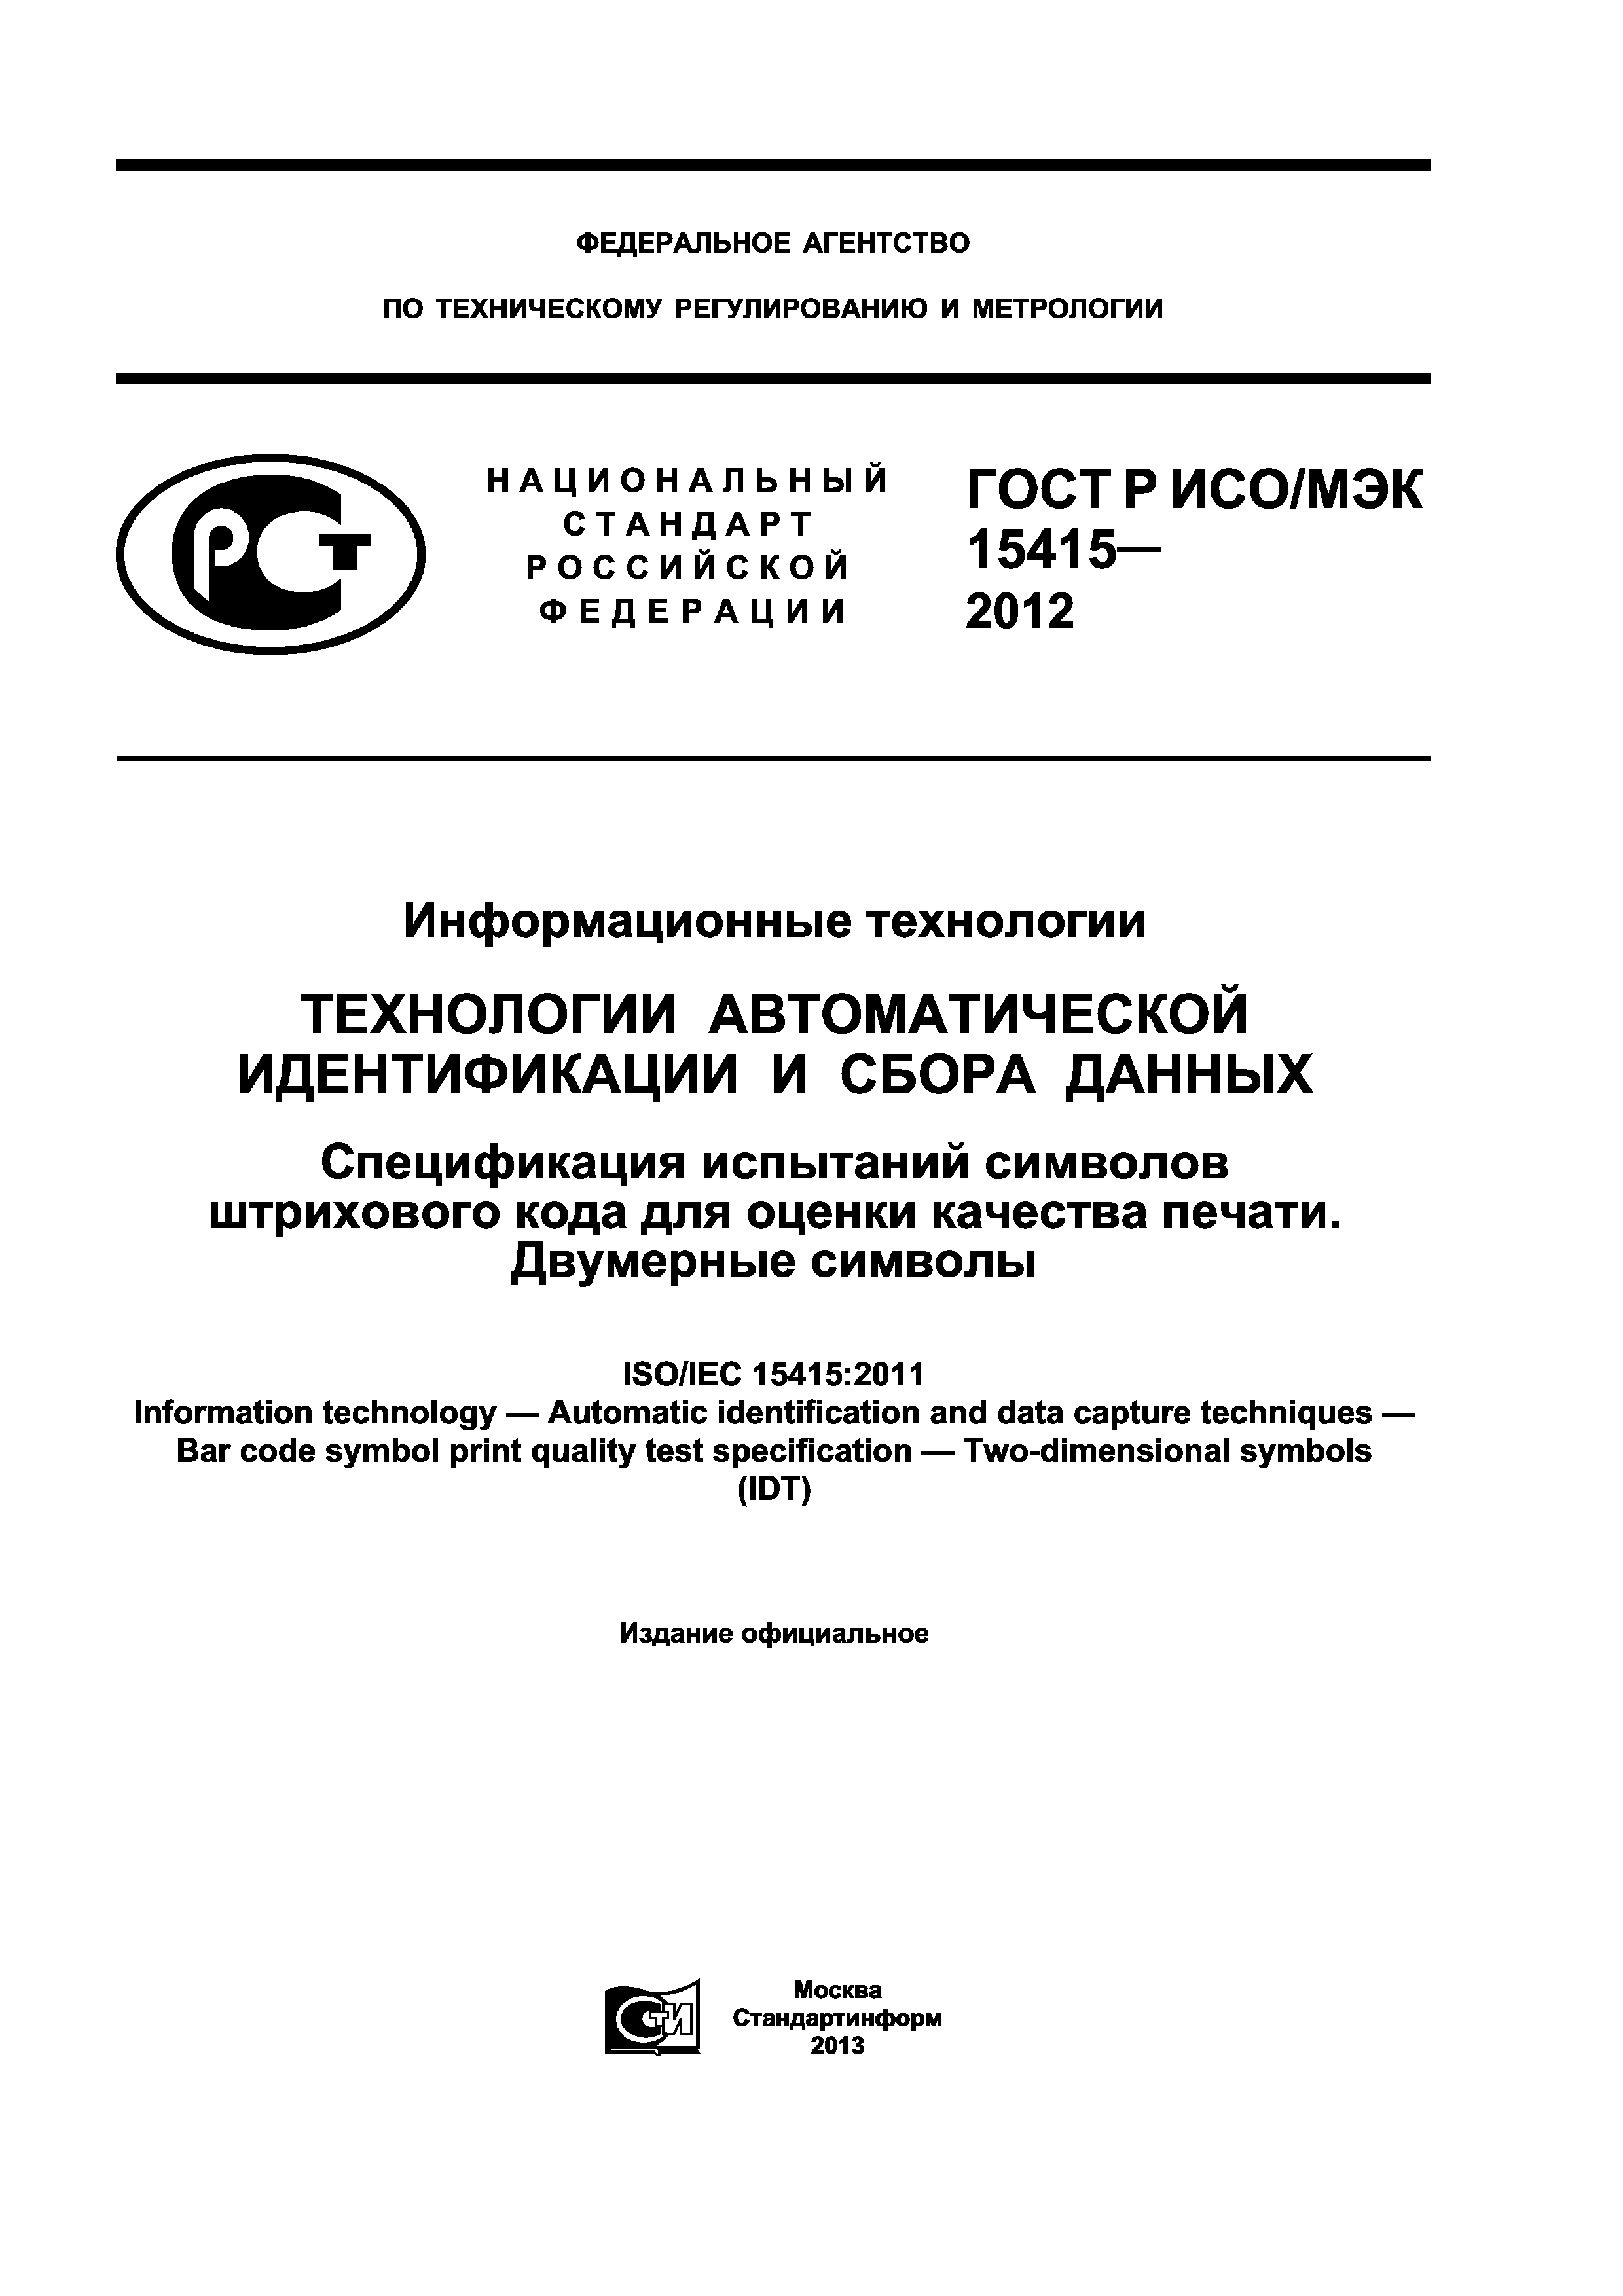 ГОСТ Р ИСО/МЭК 15415-2012